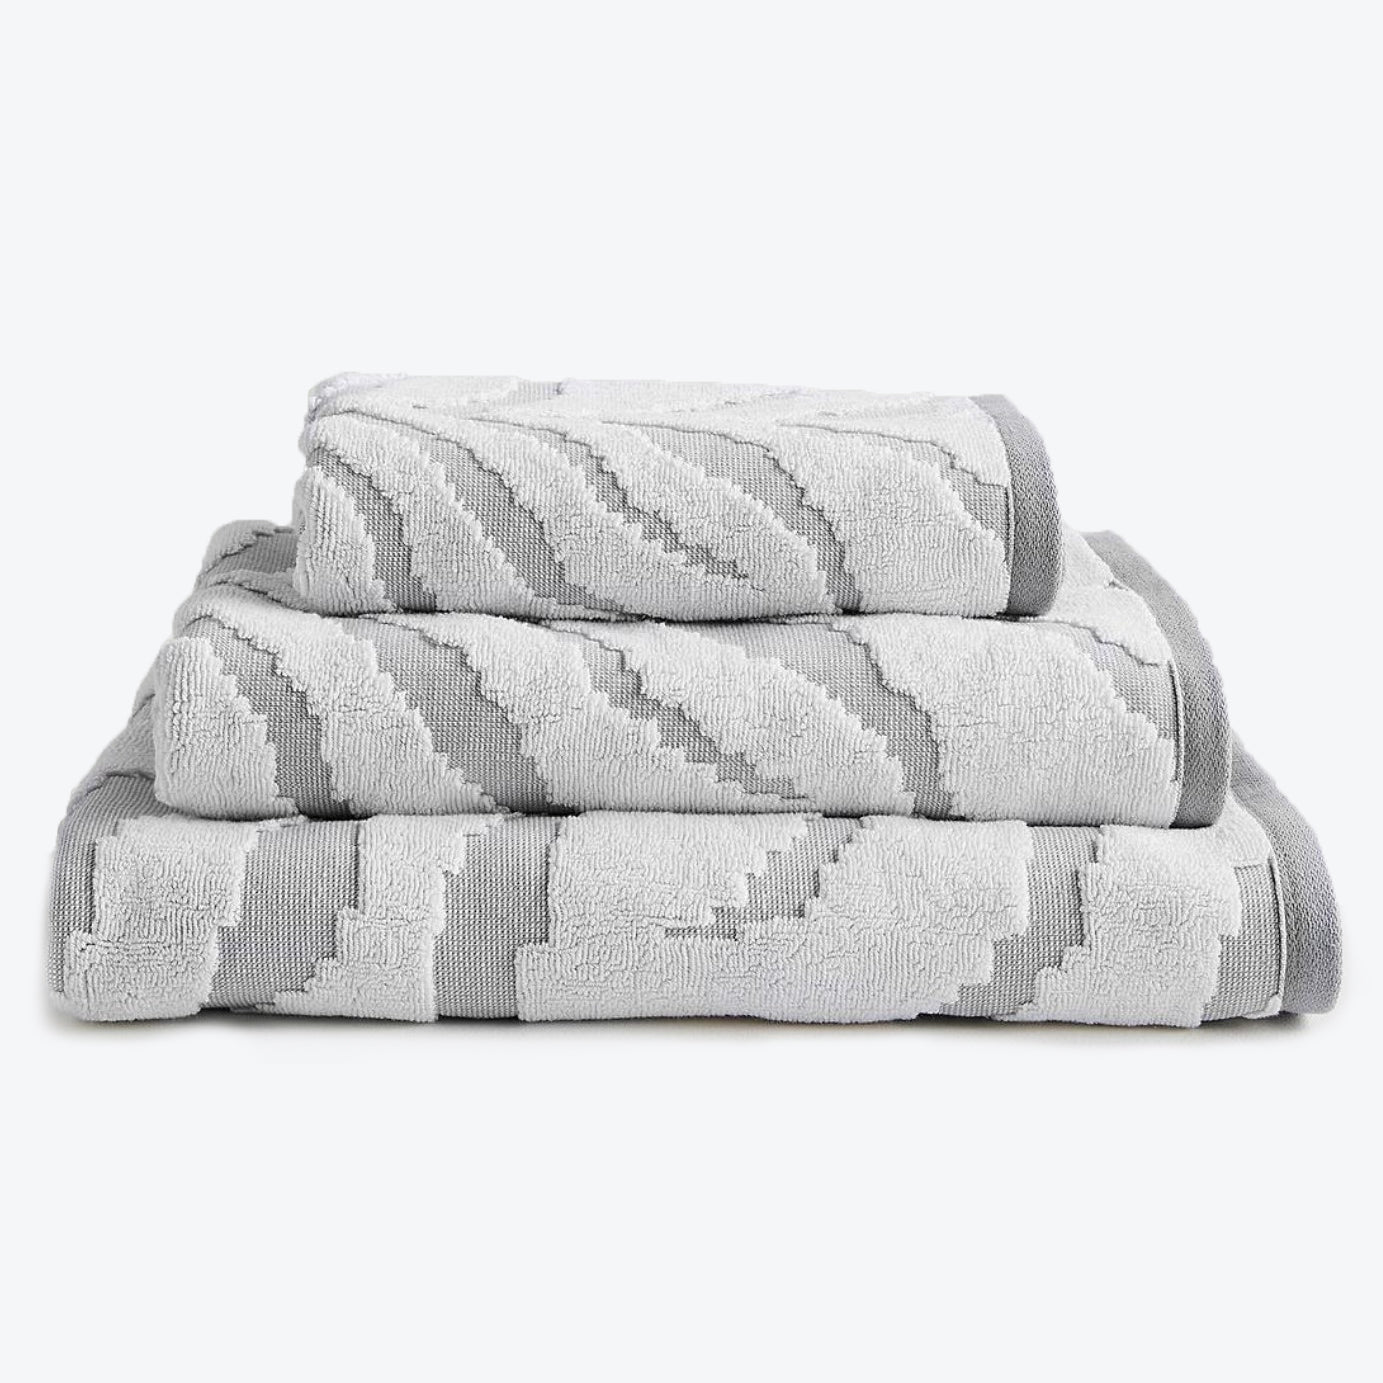 Towel set in Zebra print